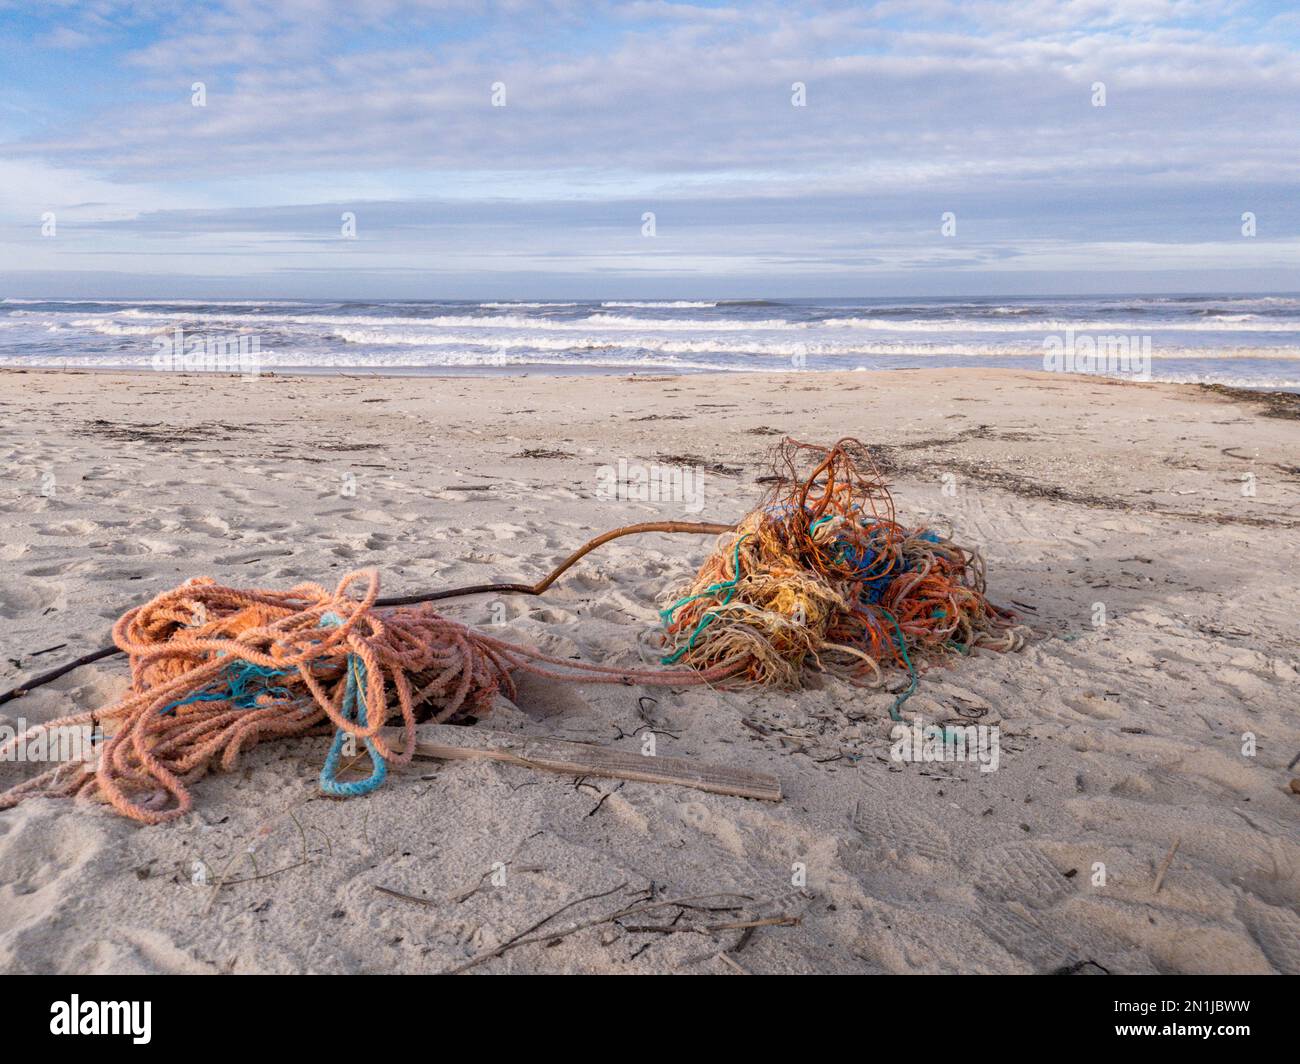 Des cordes, des filets et des épaves de bateaux de pêche emmêlés ont été lavés sur le sable d'une plage sale au Portugal avec l'océan et le ciel en arrière-plan Banque D'Images